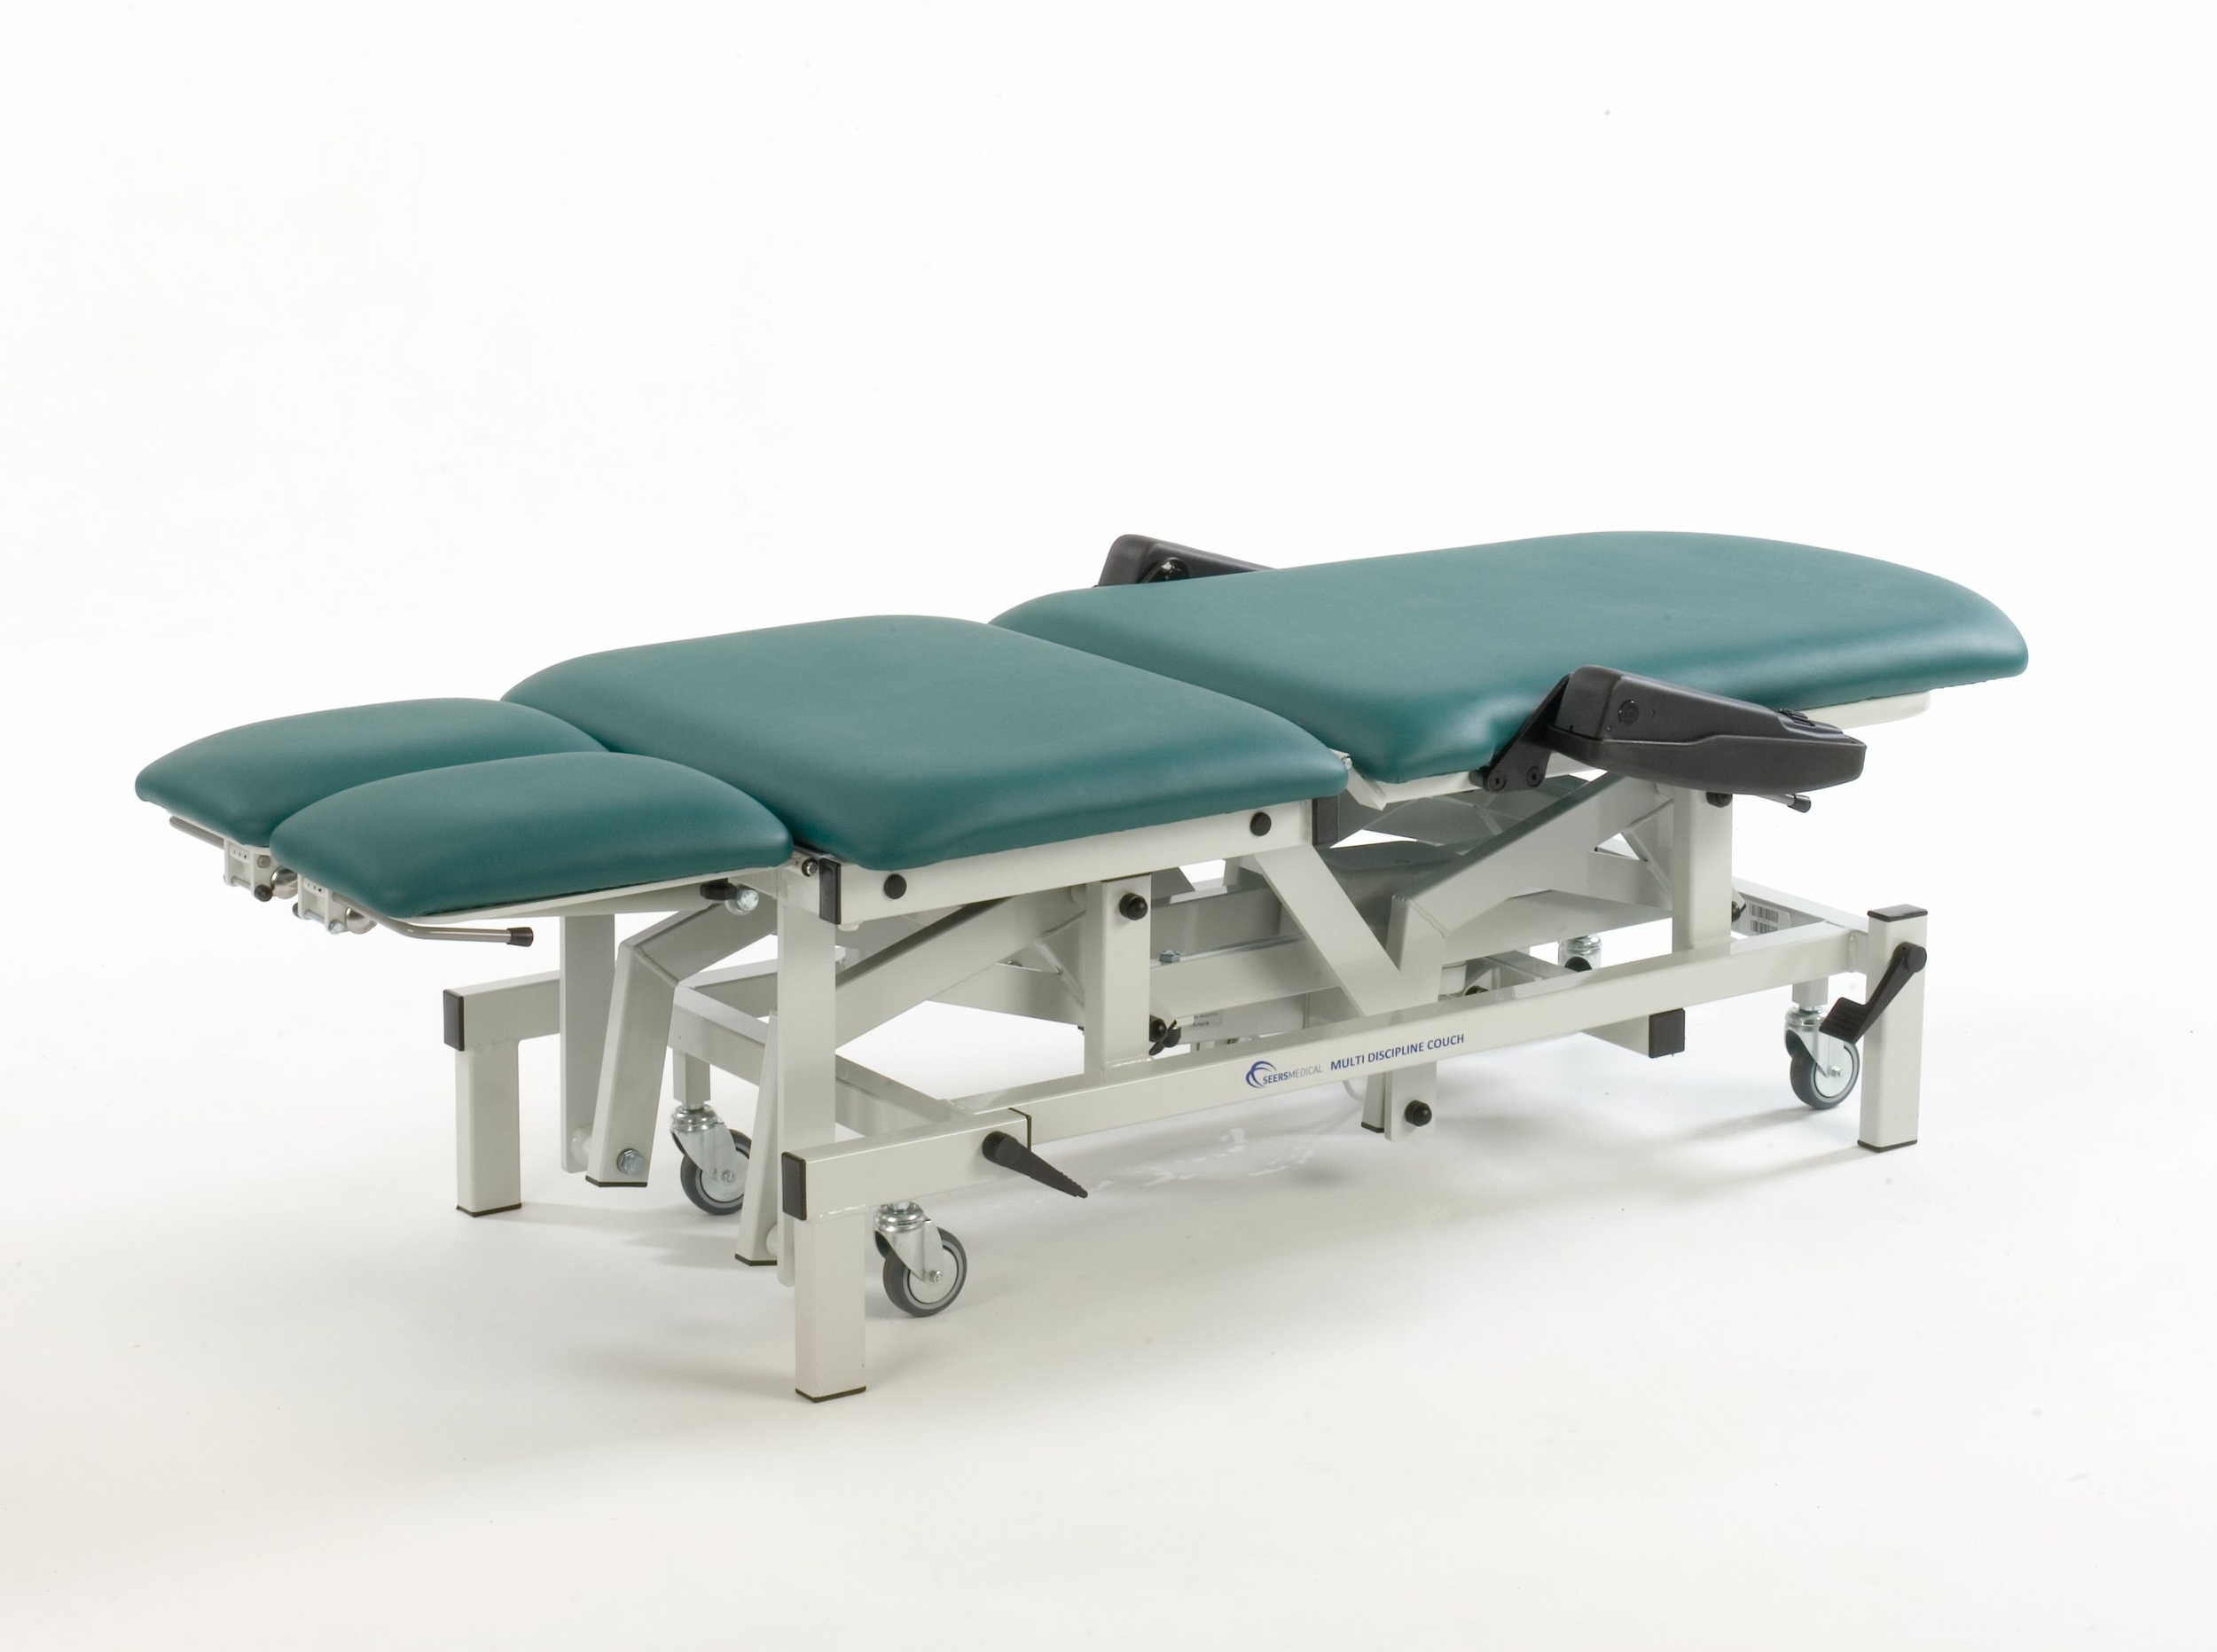 seers medical fauteuil de podologie électrique SM0575 vert tablelya version allongé position basse 50 cm